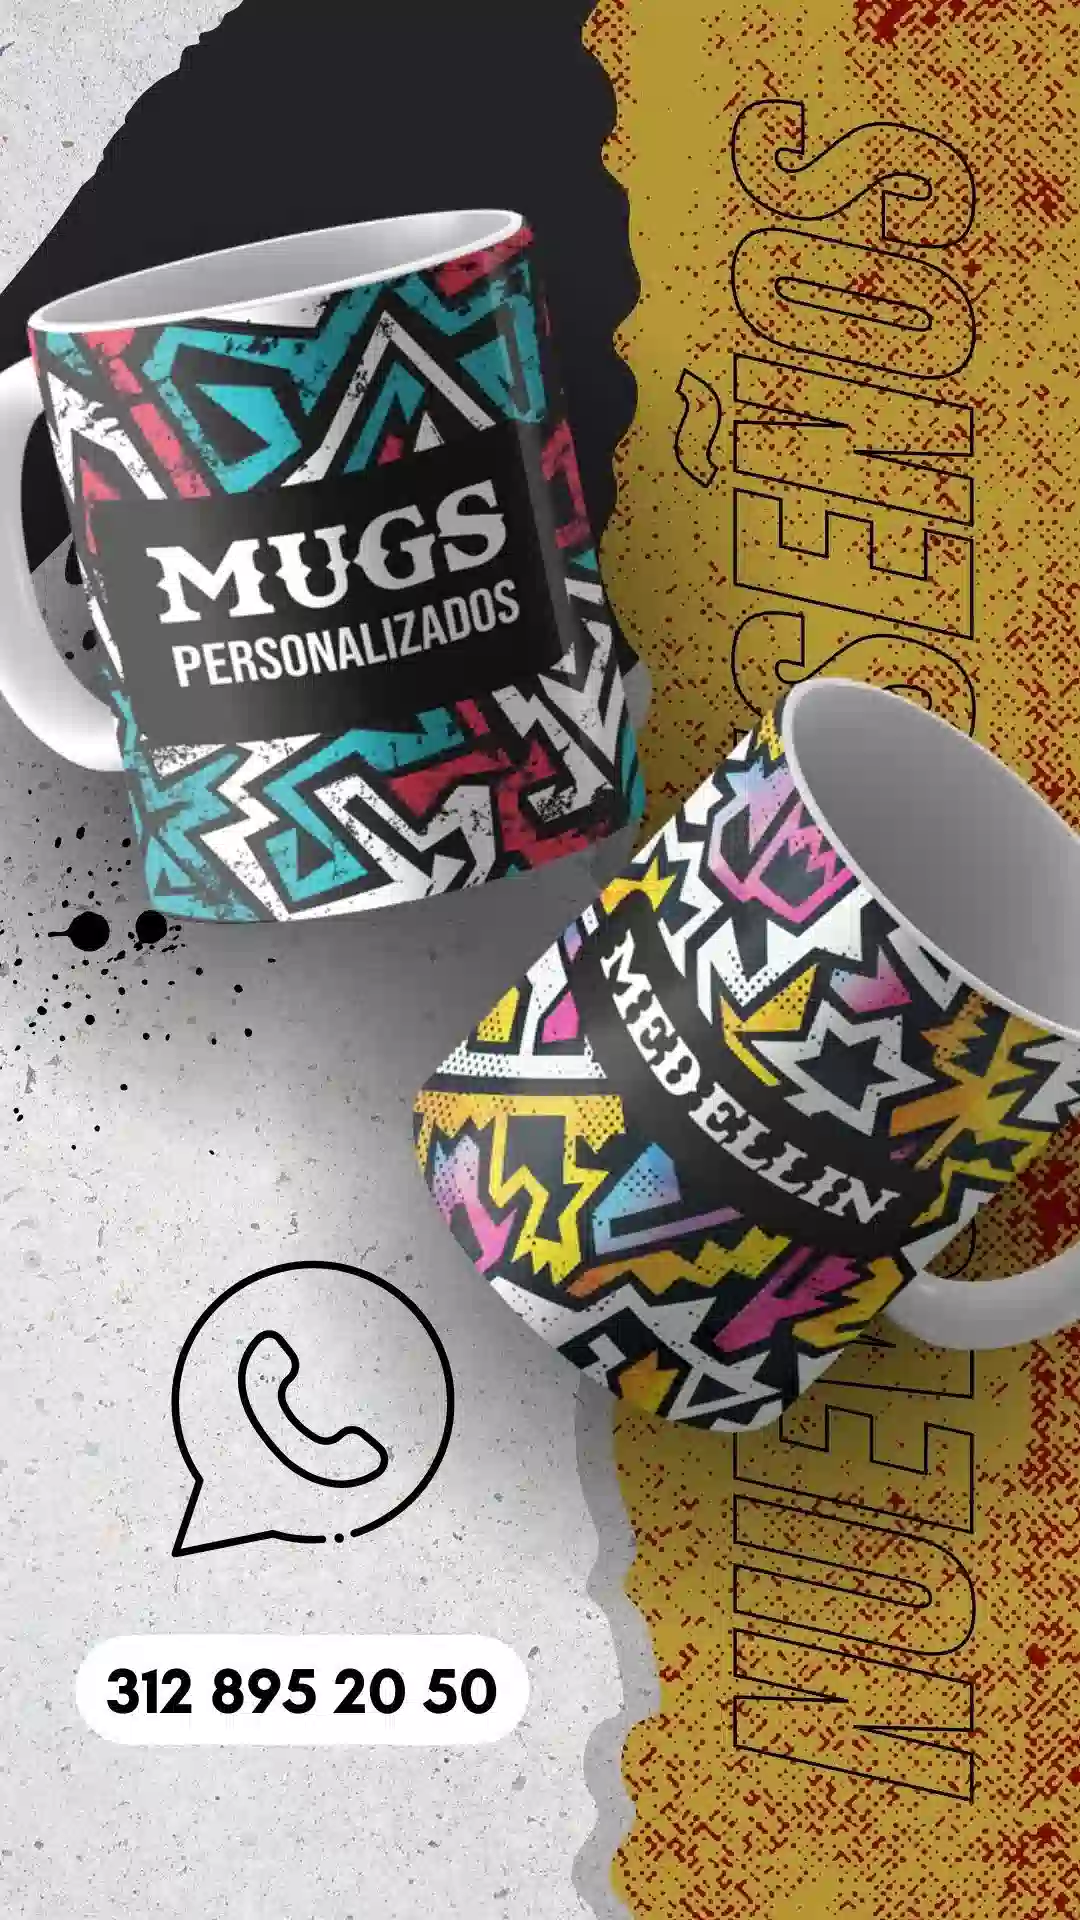 Mugs personalizados en medellin